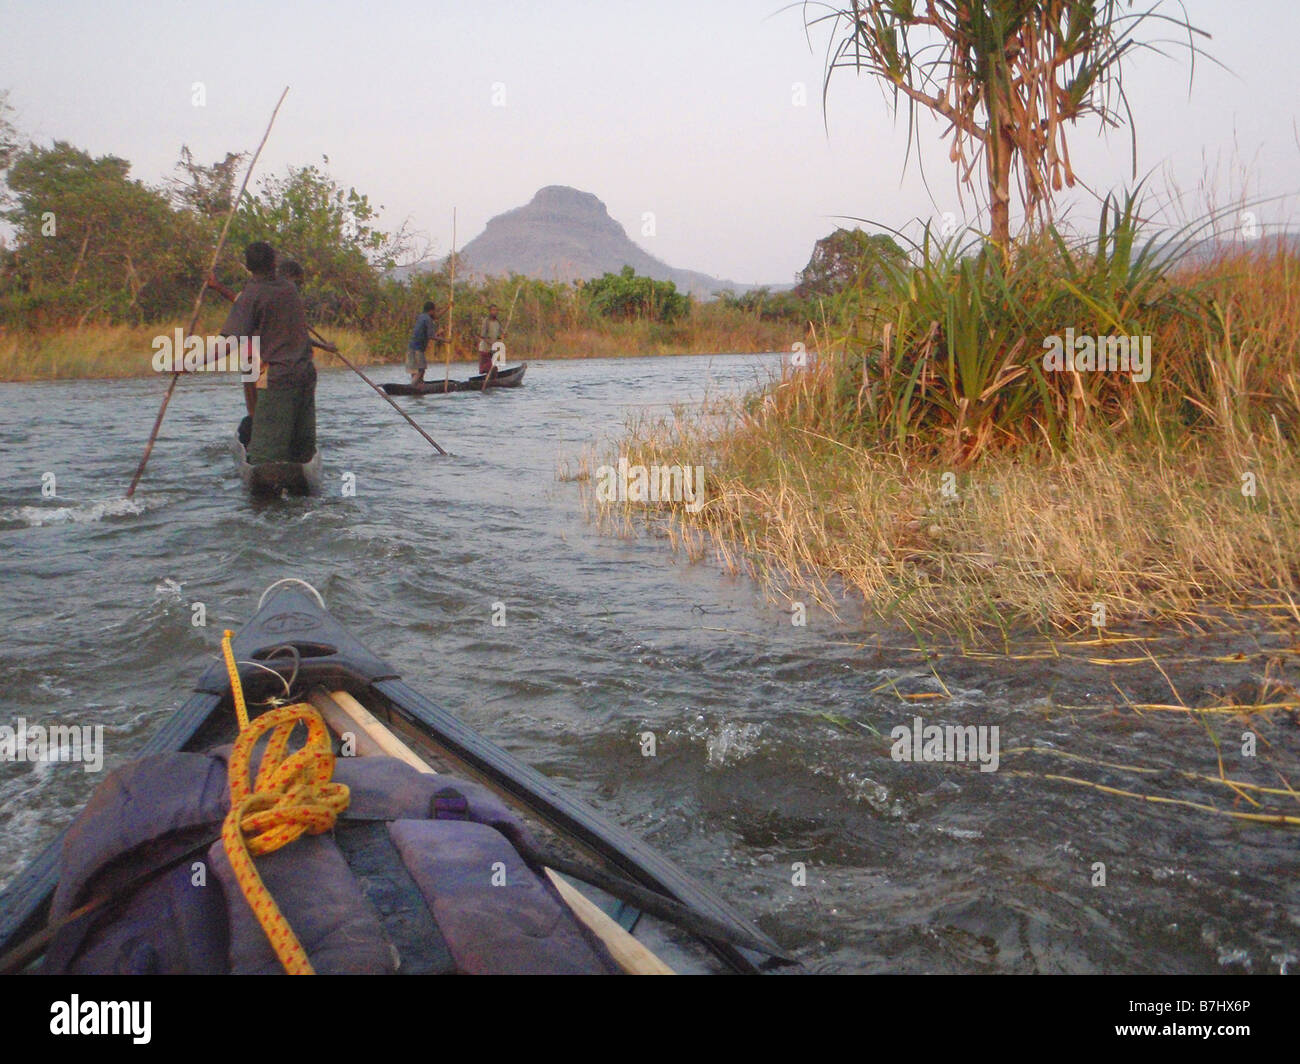 Proue de Canadian canoe guides pêcheurs suit vers le bas des rapides sur la rivière Luvua province du Katanga en République démocratique du Congo Banque D'Images